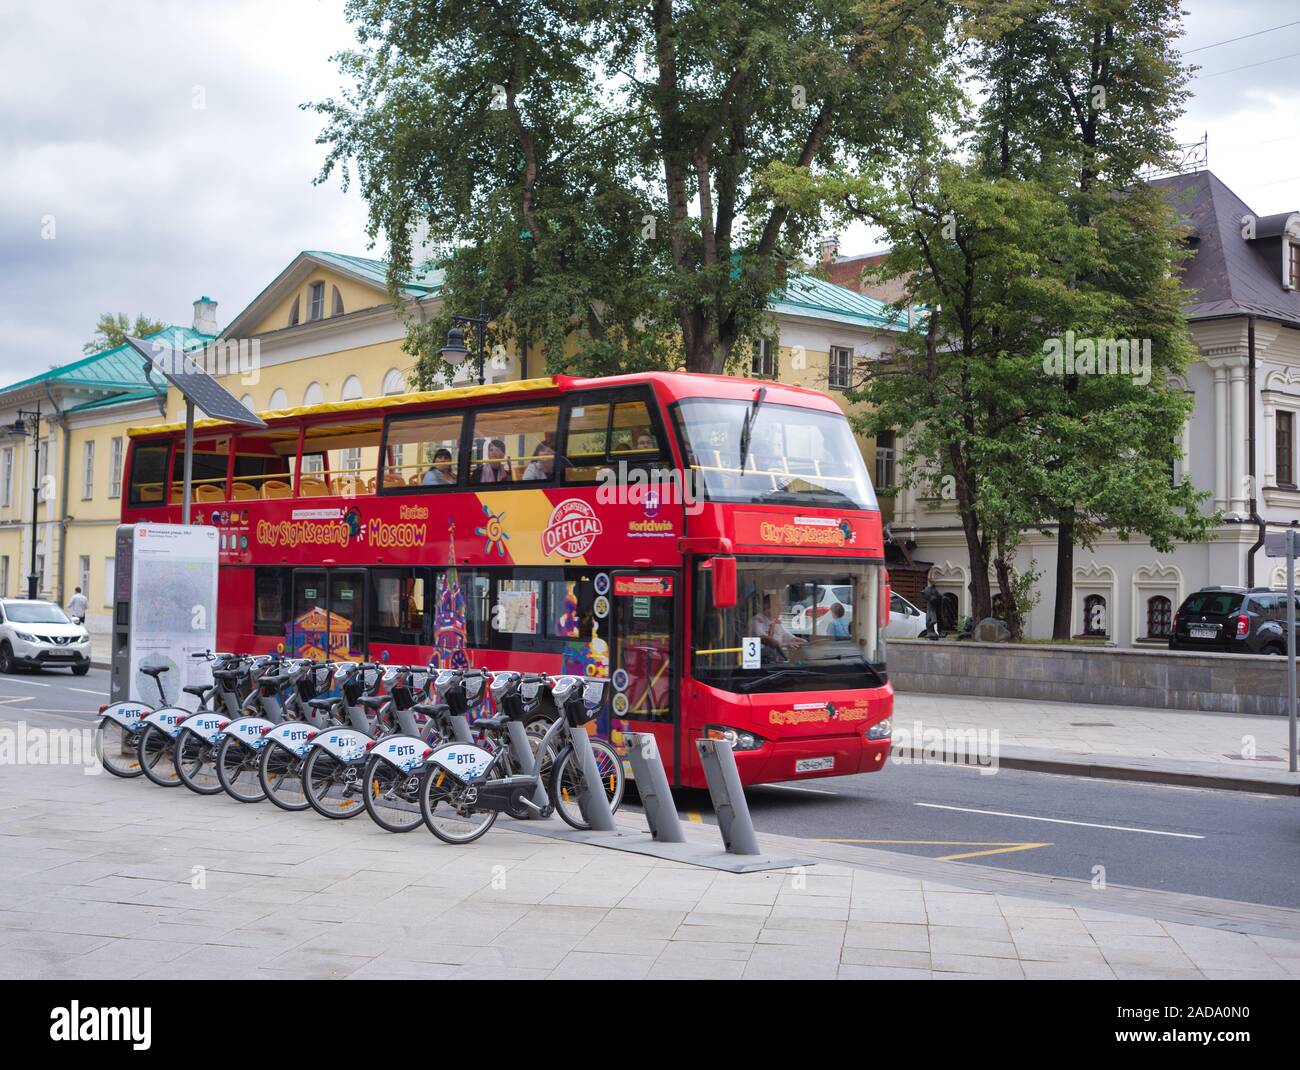 Alquiler de bicicletas en el fondo de un autobús turístico. Foto de stock